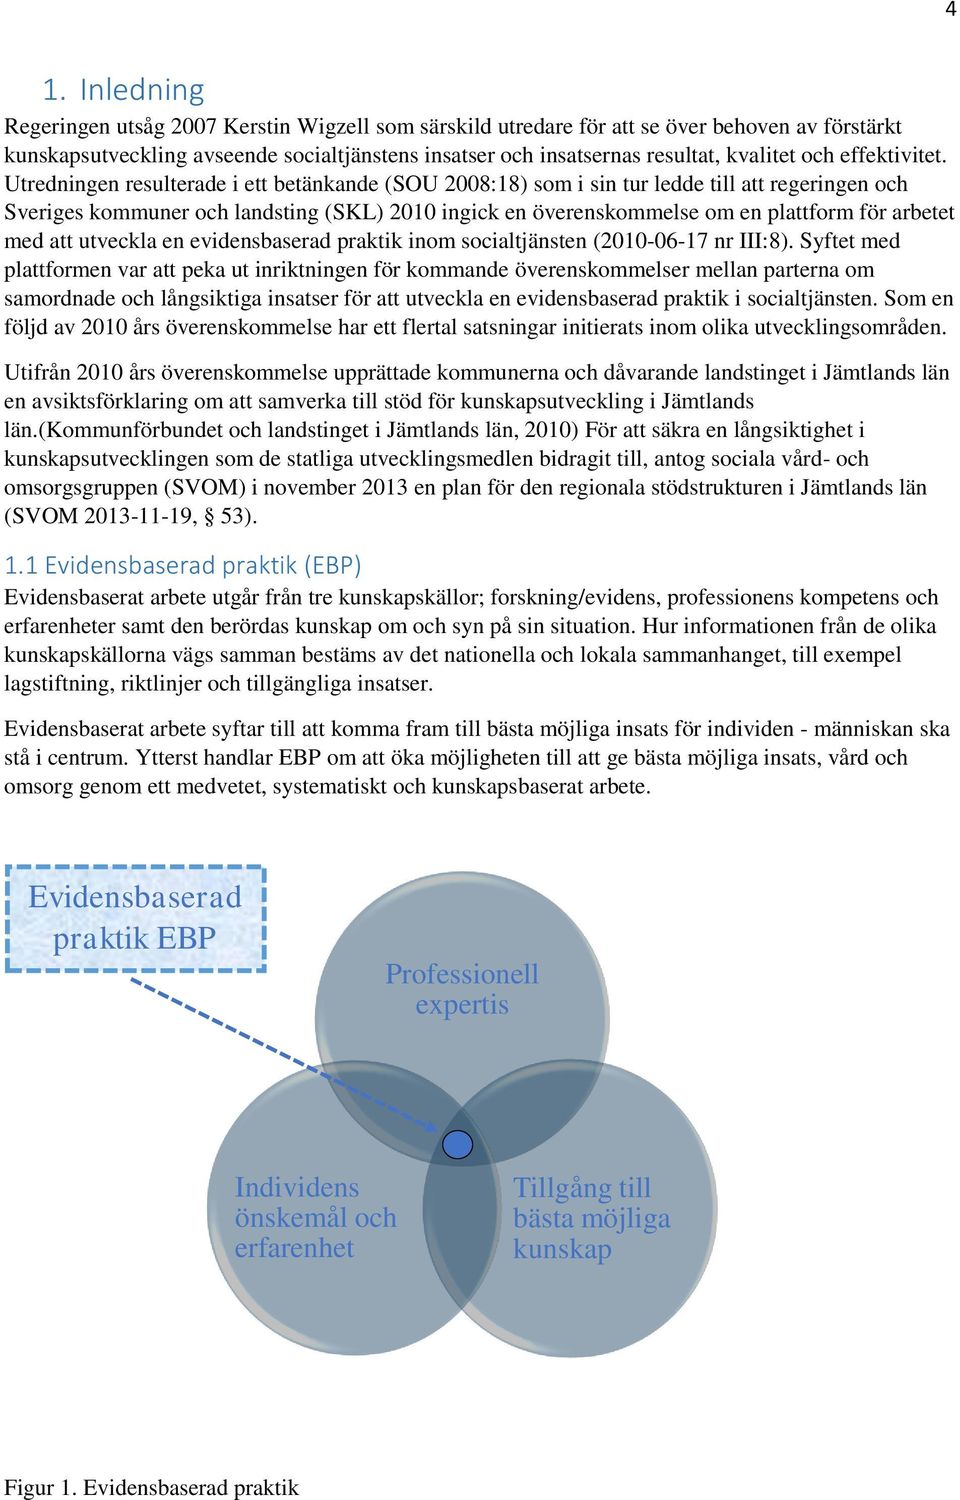 Utredningen resulterade i ett betänkande (SOU 2008:18) som i sin tur ledde till att regeringen och Sveriges kommuner och landsting (SKL) 2010 ingick en överenskommelse om en plattform för arbetet med